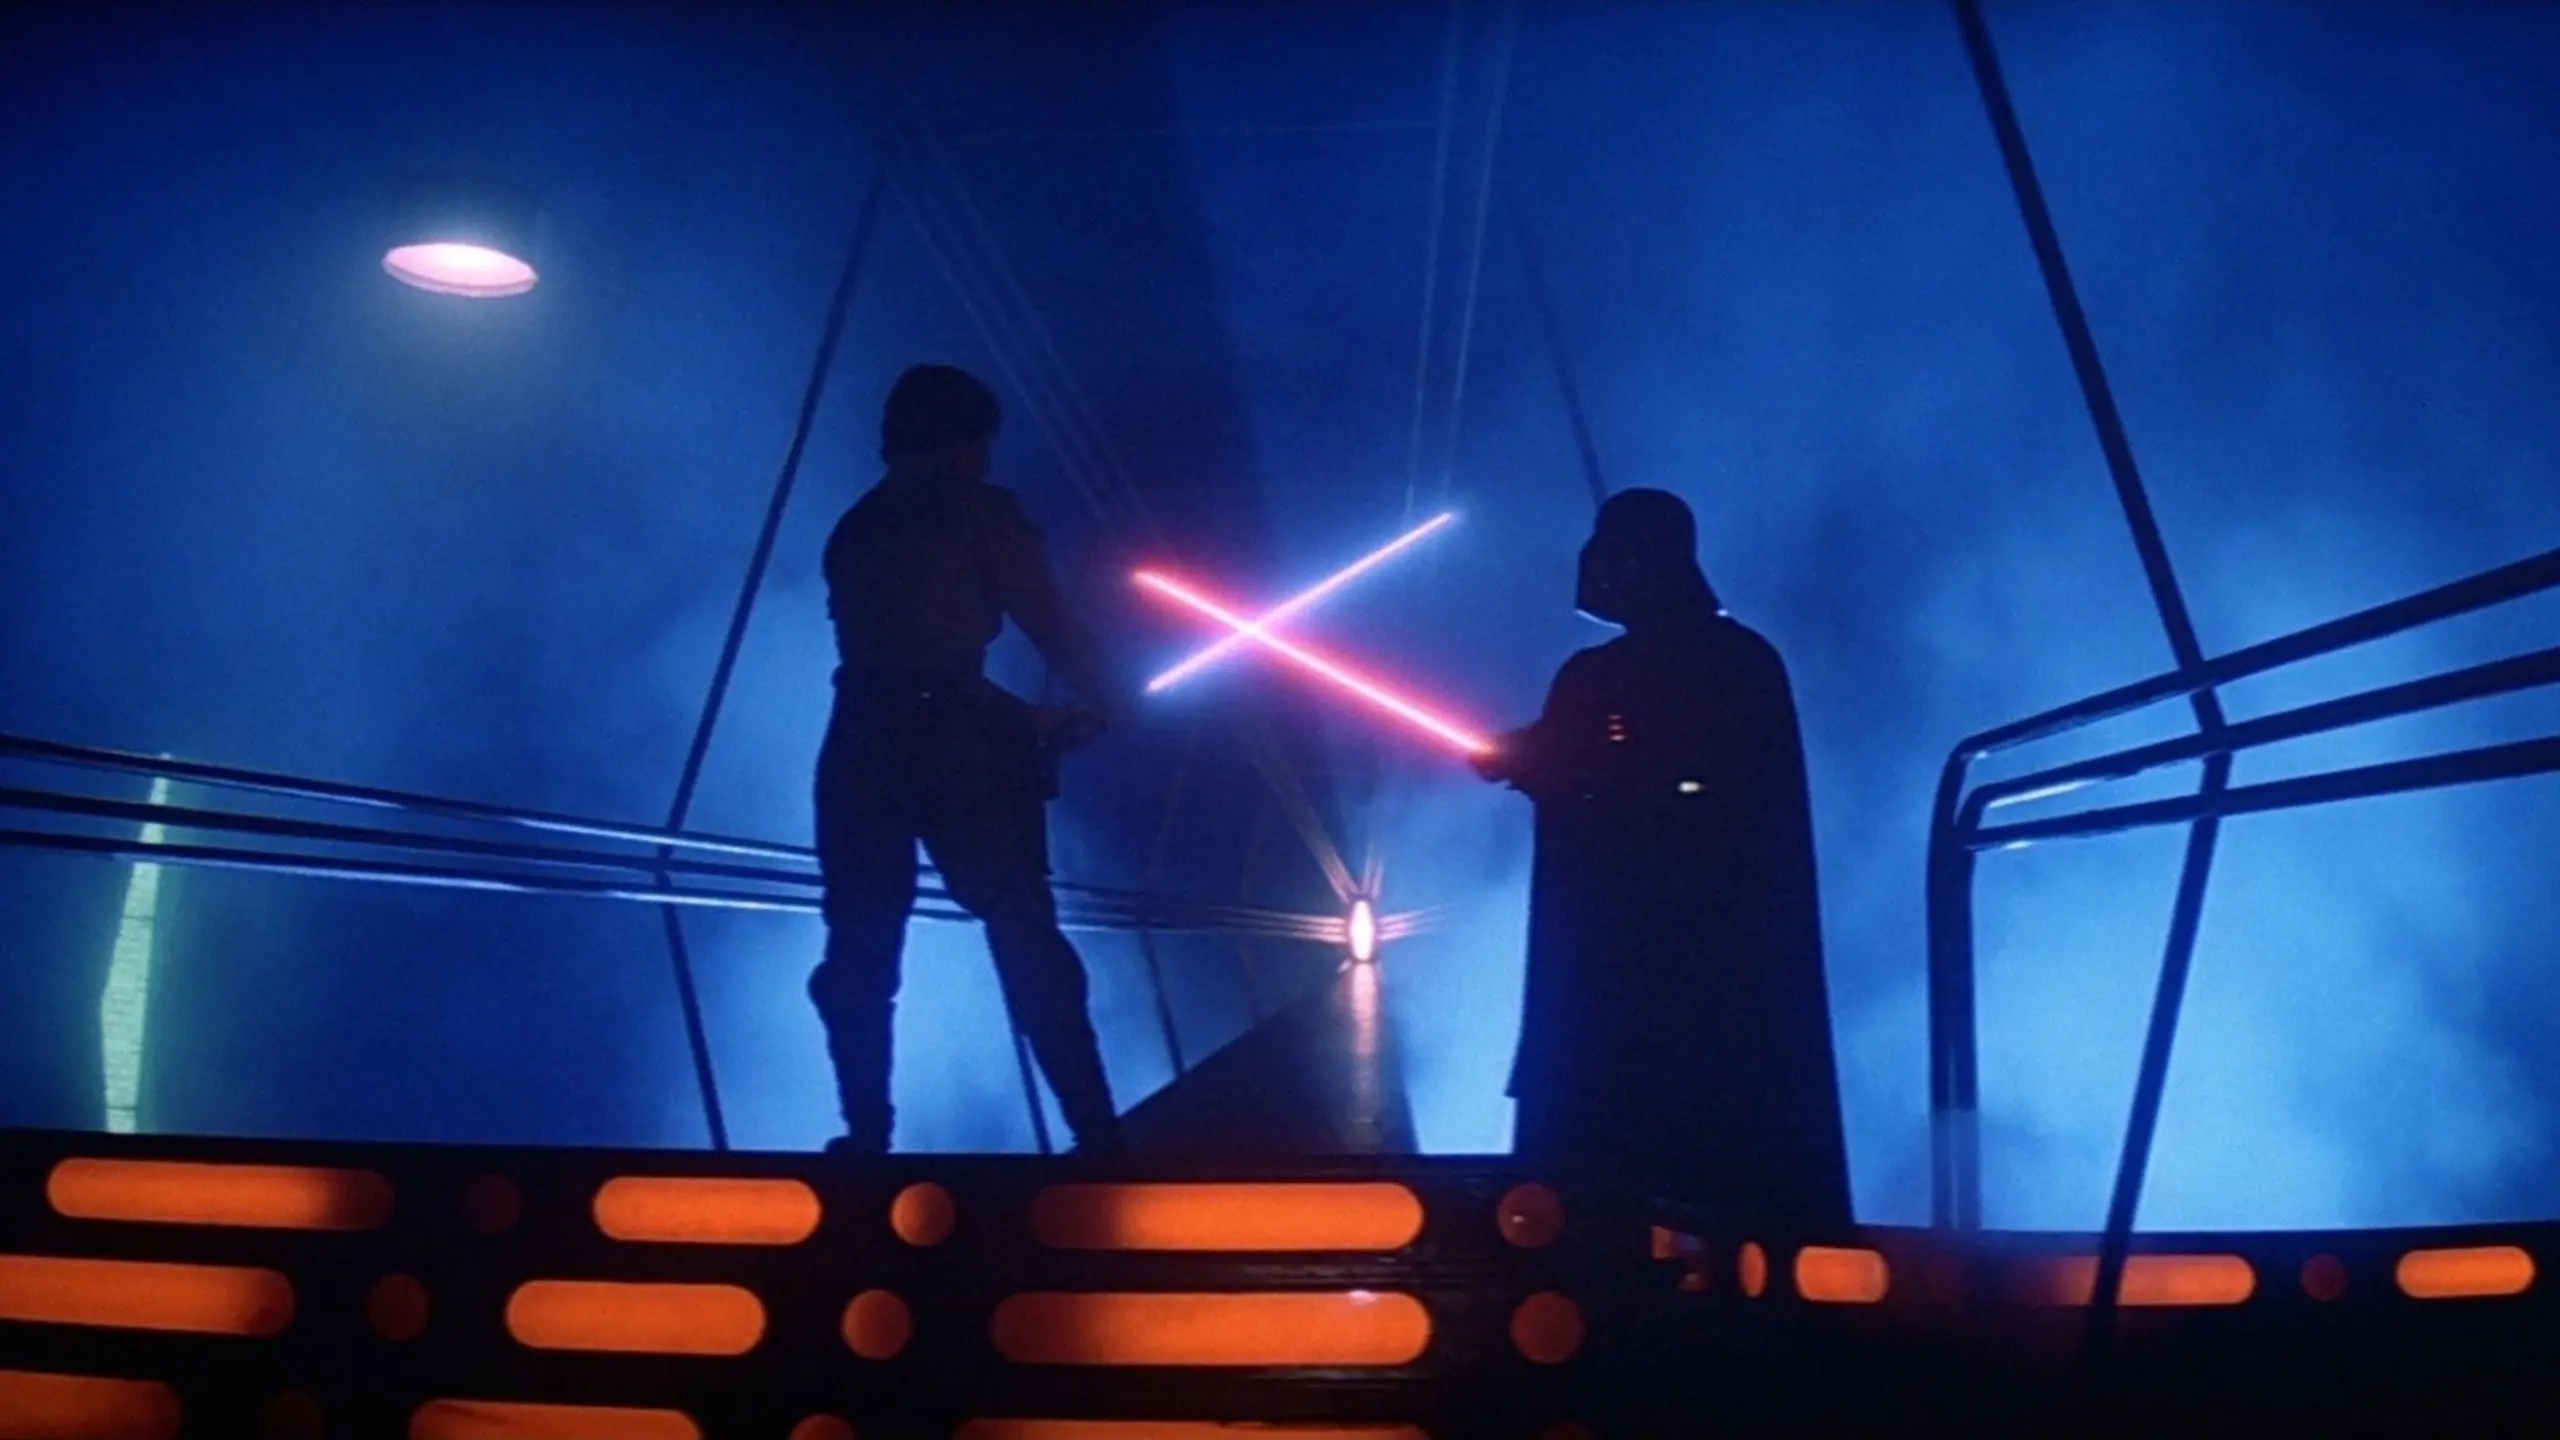 Star Wars: Episode V – Das Imperium schlägt zurück